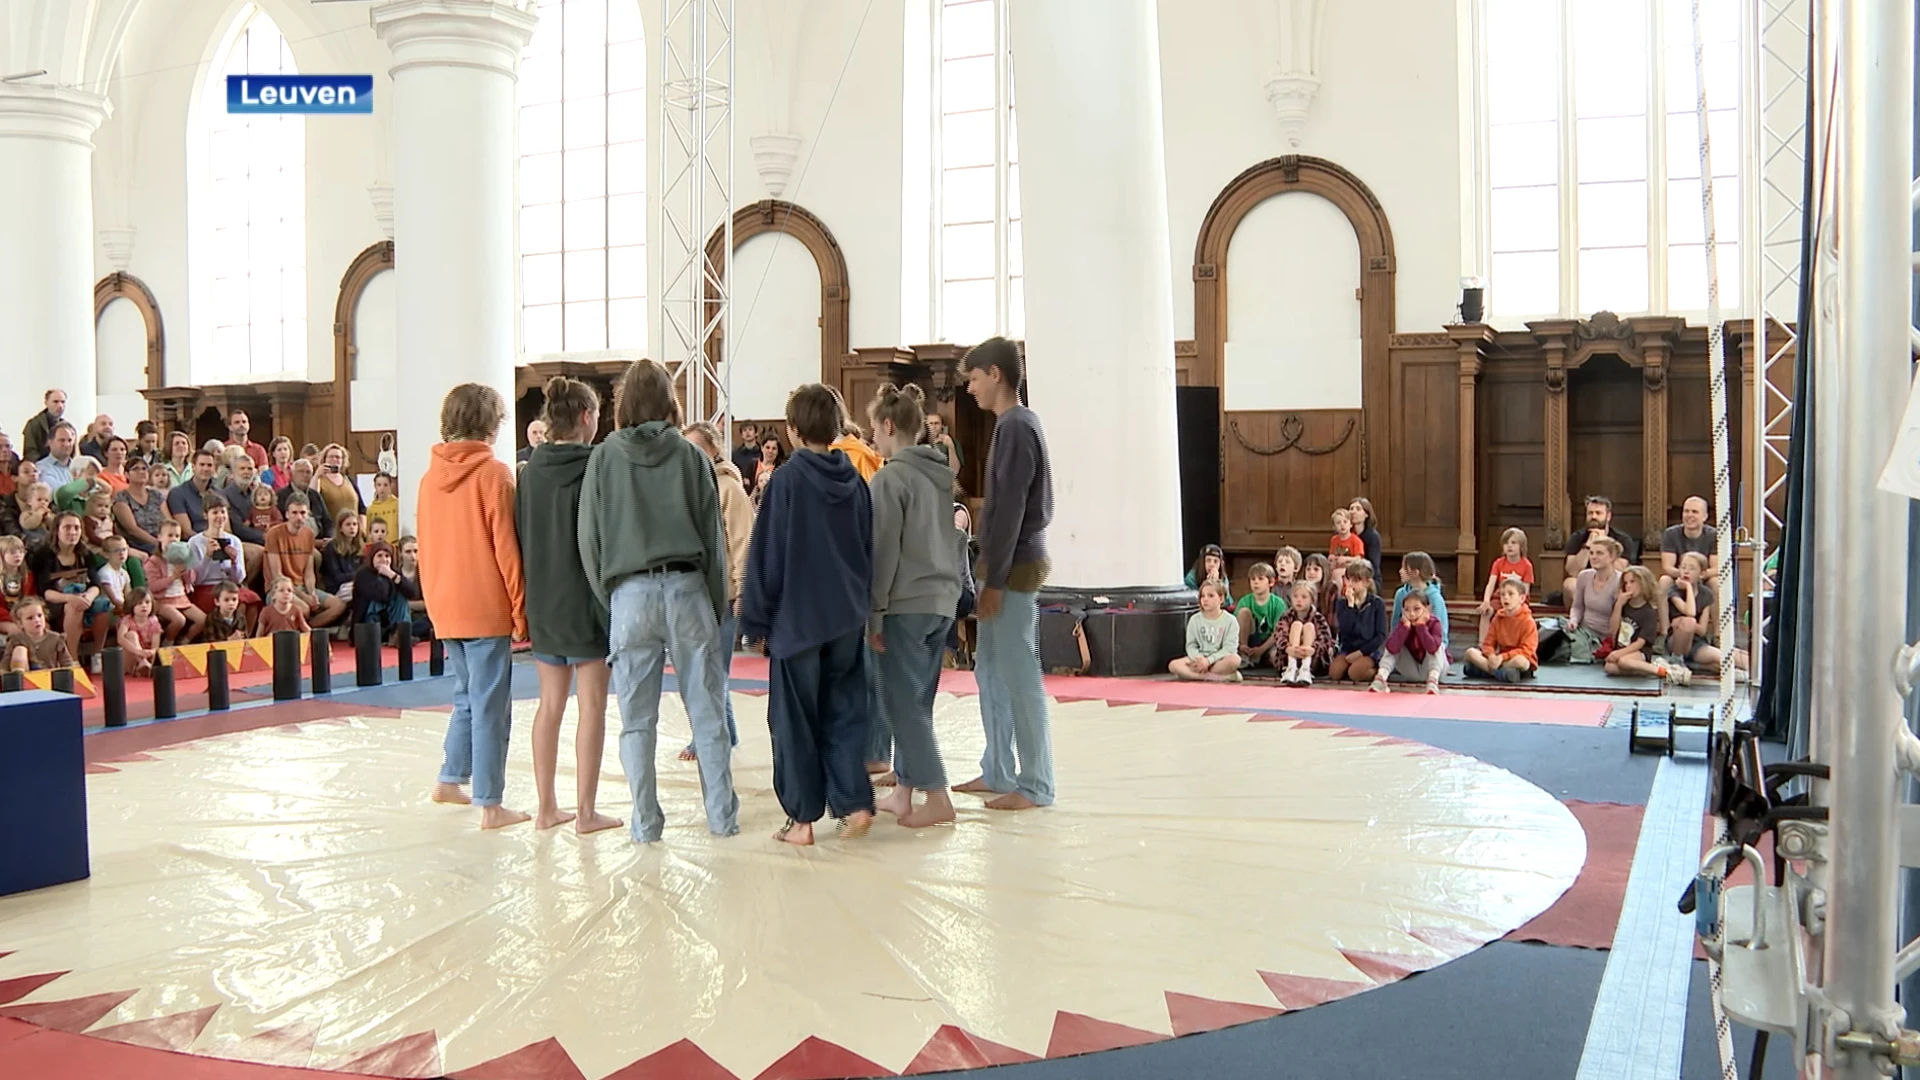 Open dag Leuvense cirkusschool lokt veel geïnteresseerden: "Leuk dat we één van de beste cirkusscholen vlakbij onze deur hebben"